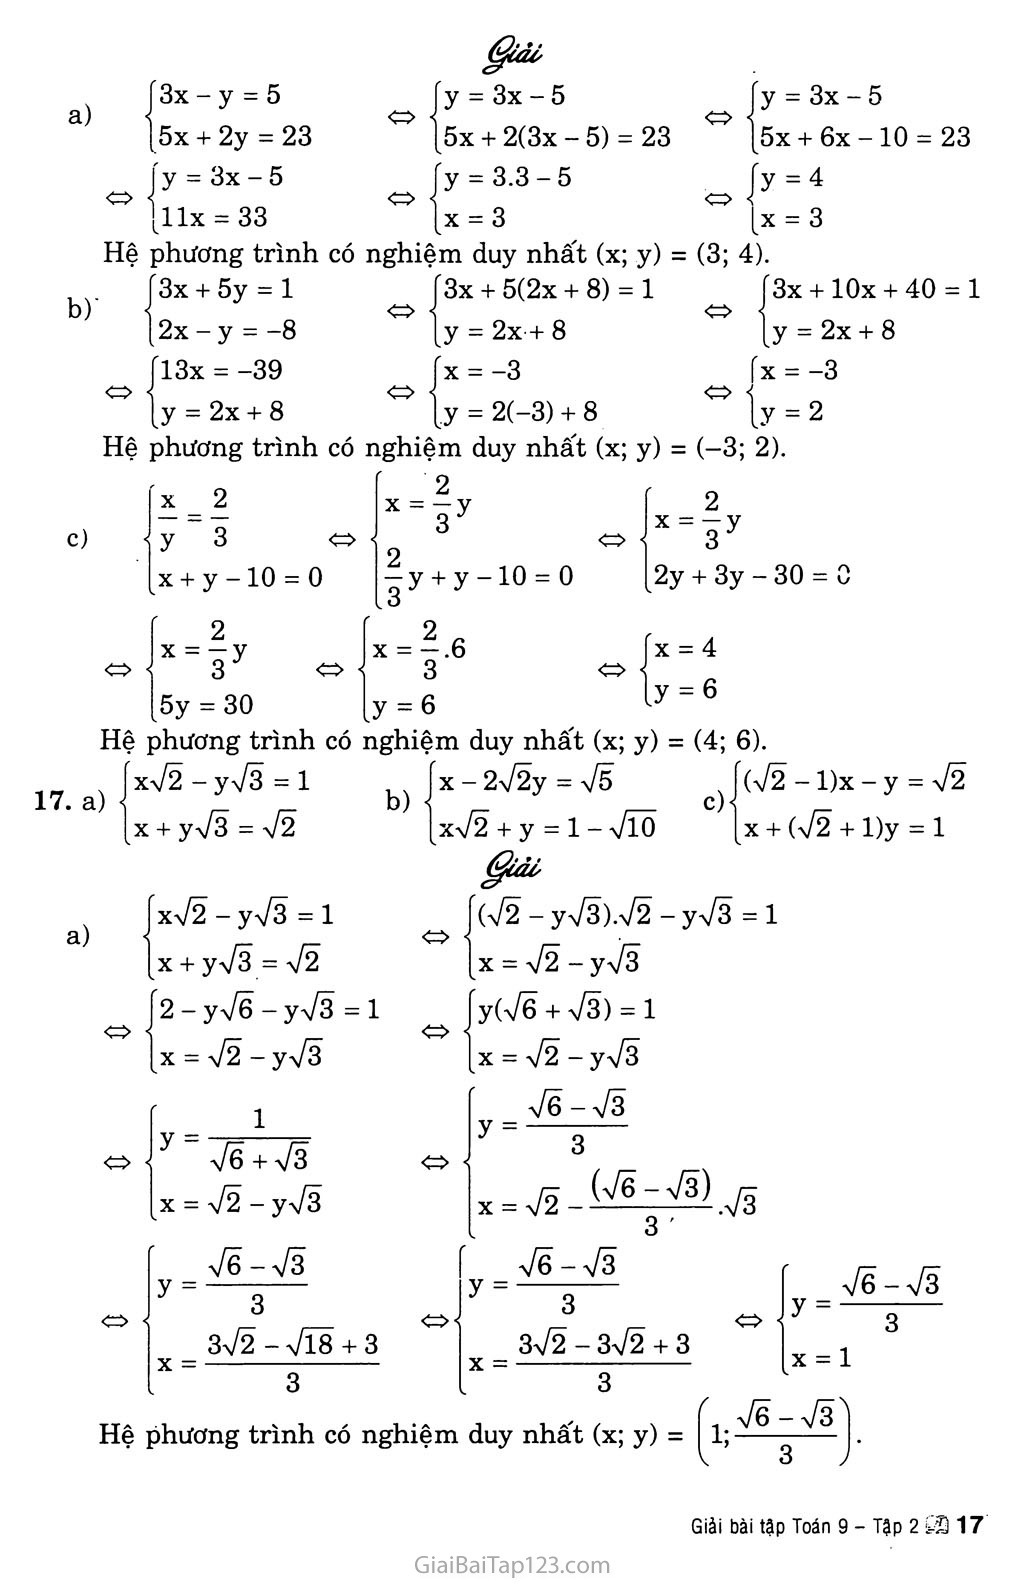 Bài 3. Giải hệ phương trình bằng phương pháp thay thế trang 6